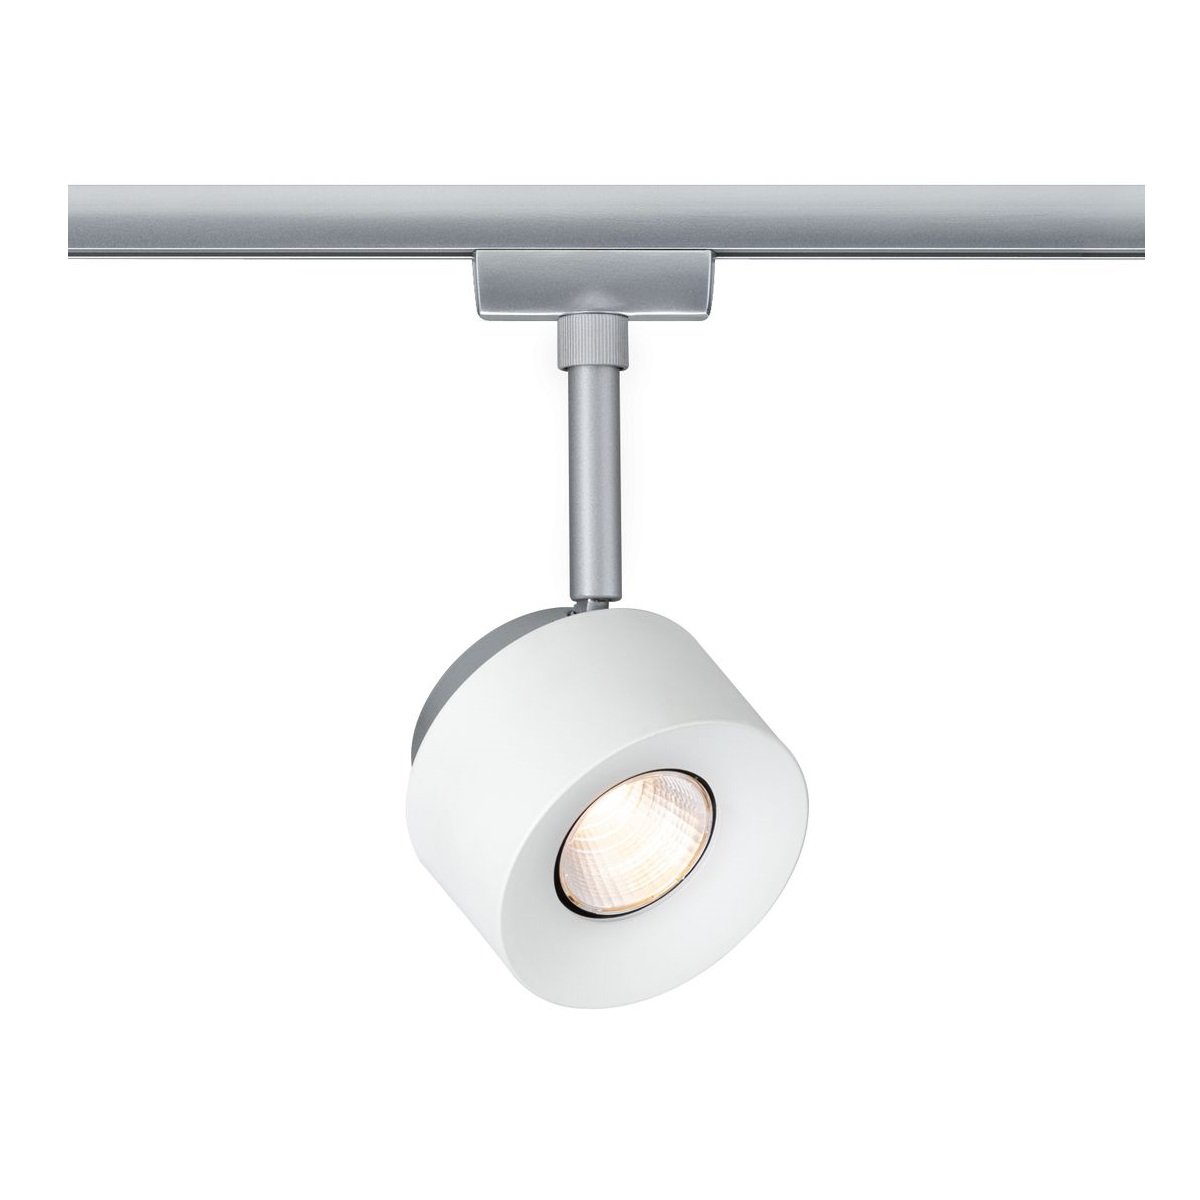 Paulmann Design URail No. 95373 URail LED-Spot Pane 7,4W Weiß Chrom matt  2700K --> Leuchten & Lampen online kaufen im